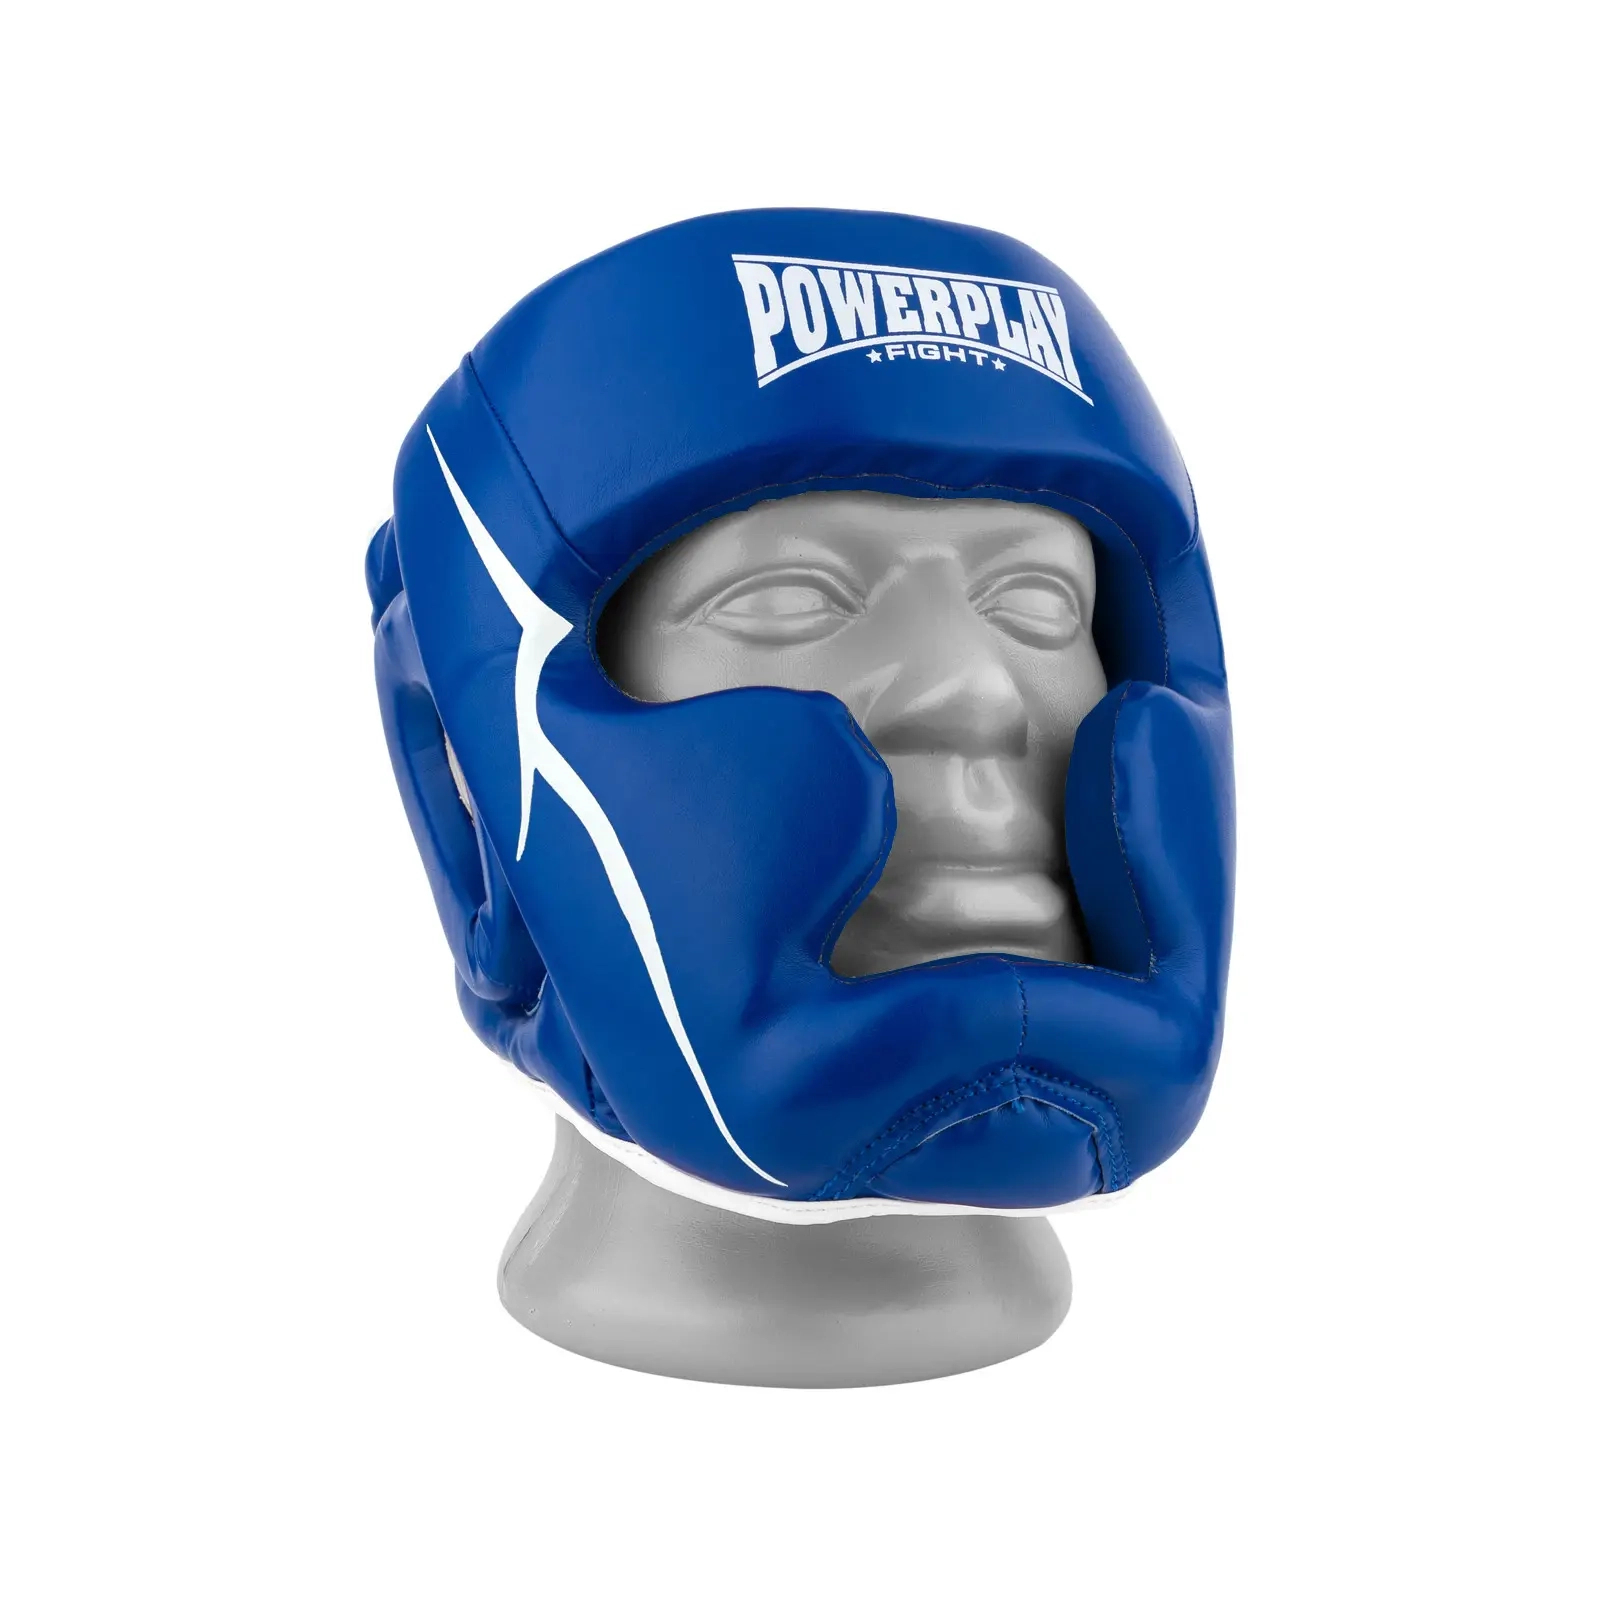 Боксерский шлем PowerPlay 3100 PU Чорно-зелений XS (PP_3100_XS_Black/Green)